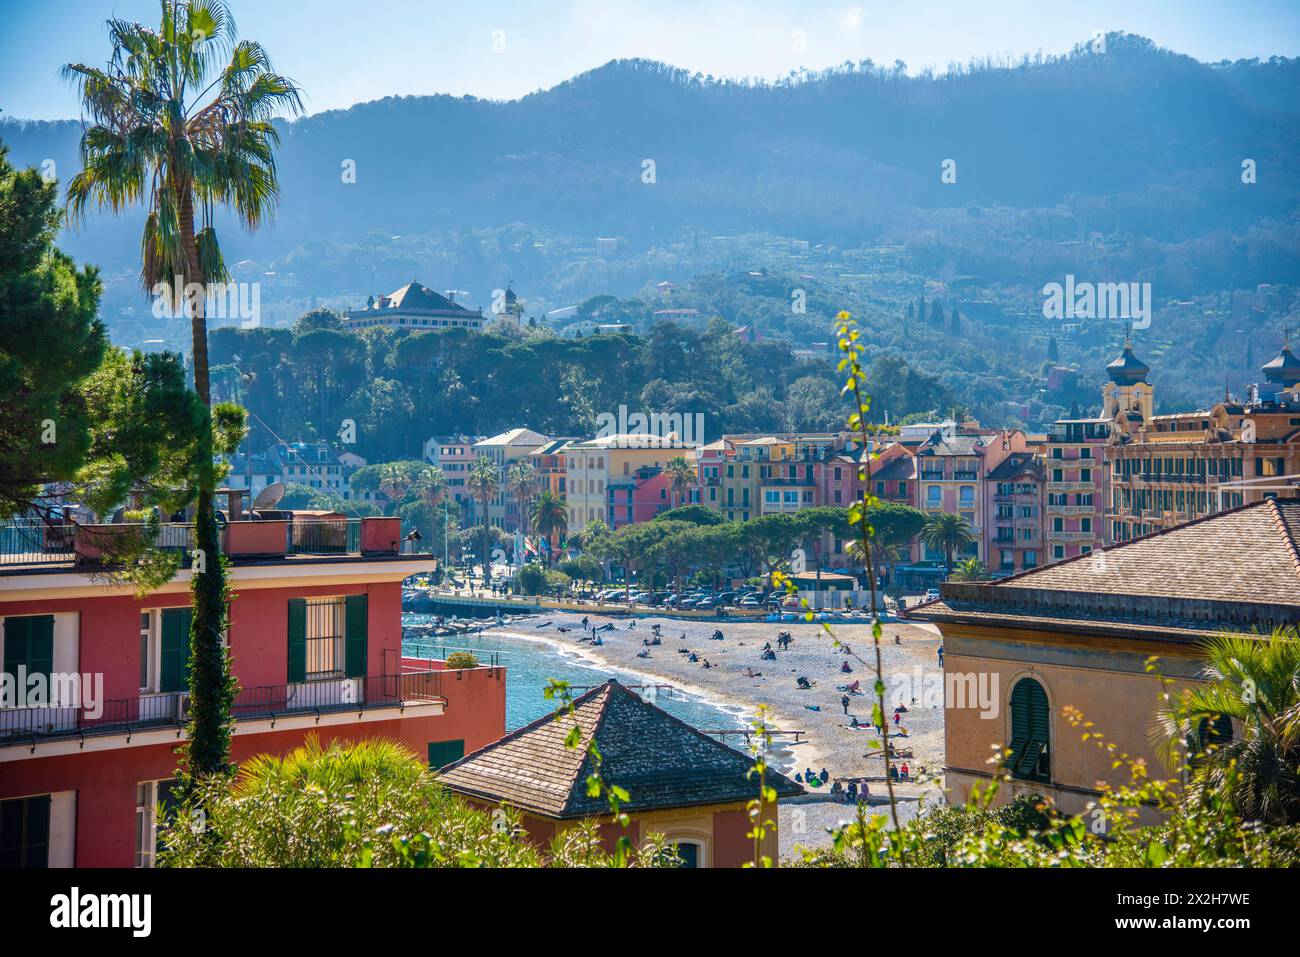 Der Hafen von Santa Margherita Ligure - beliebtes Touristenziel im Sommer in Italien. Stockfoto